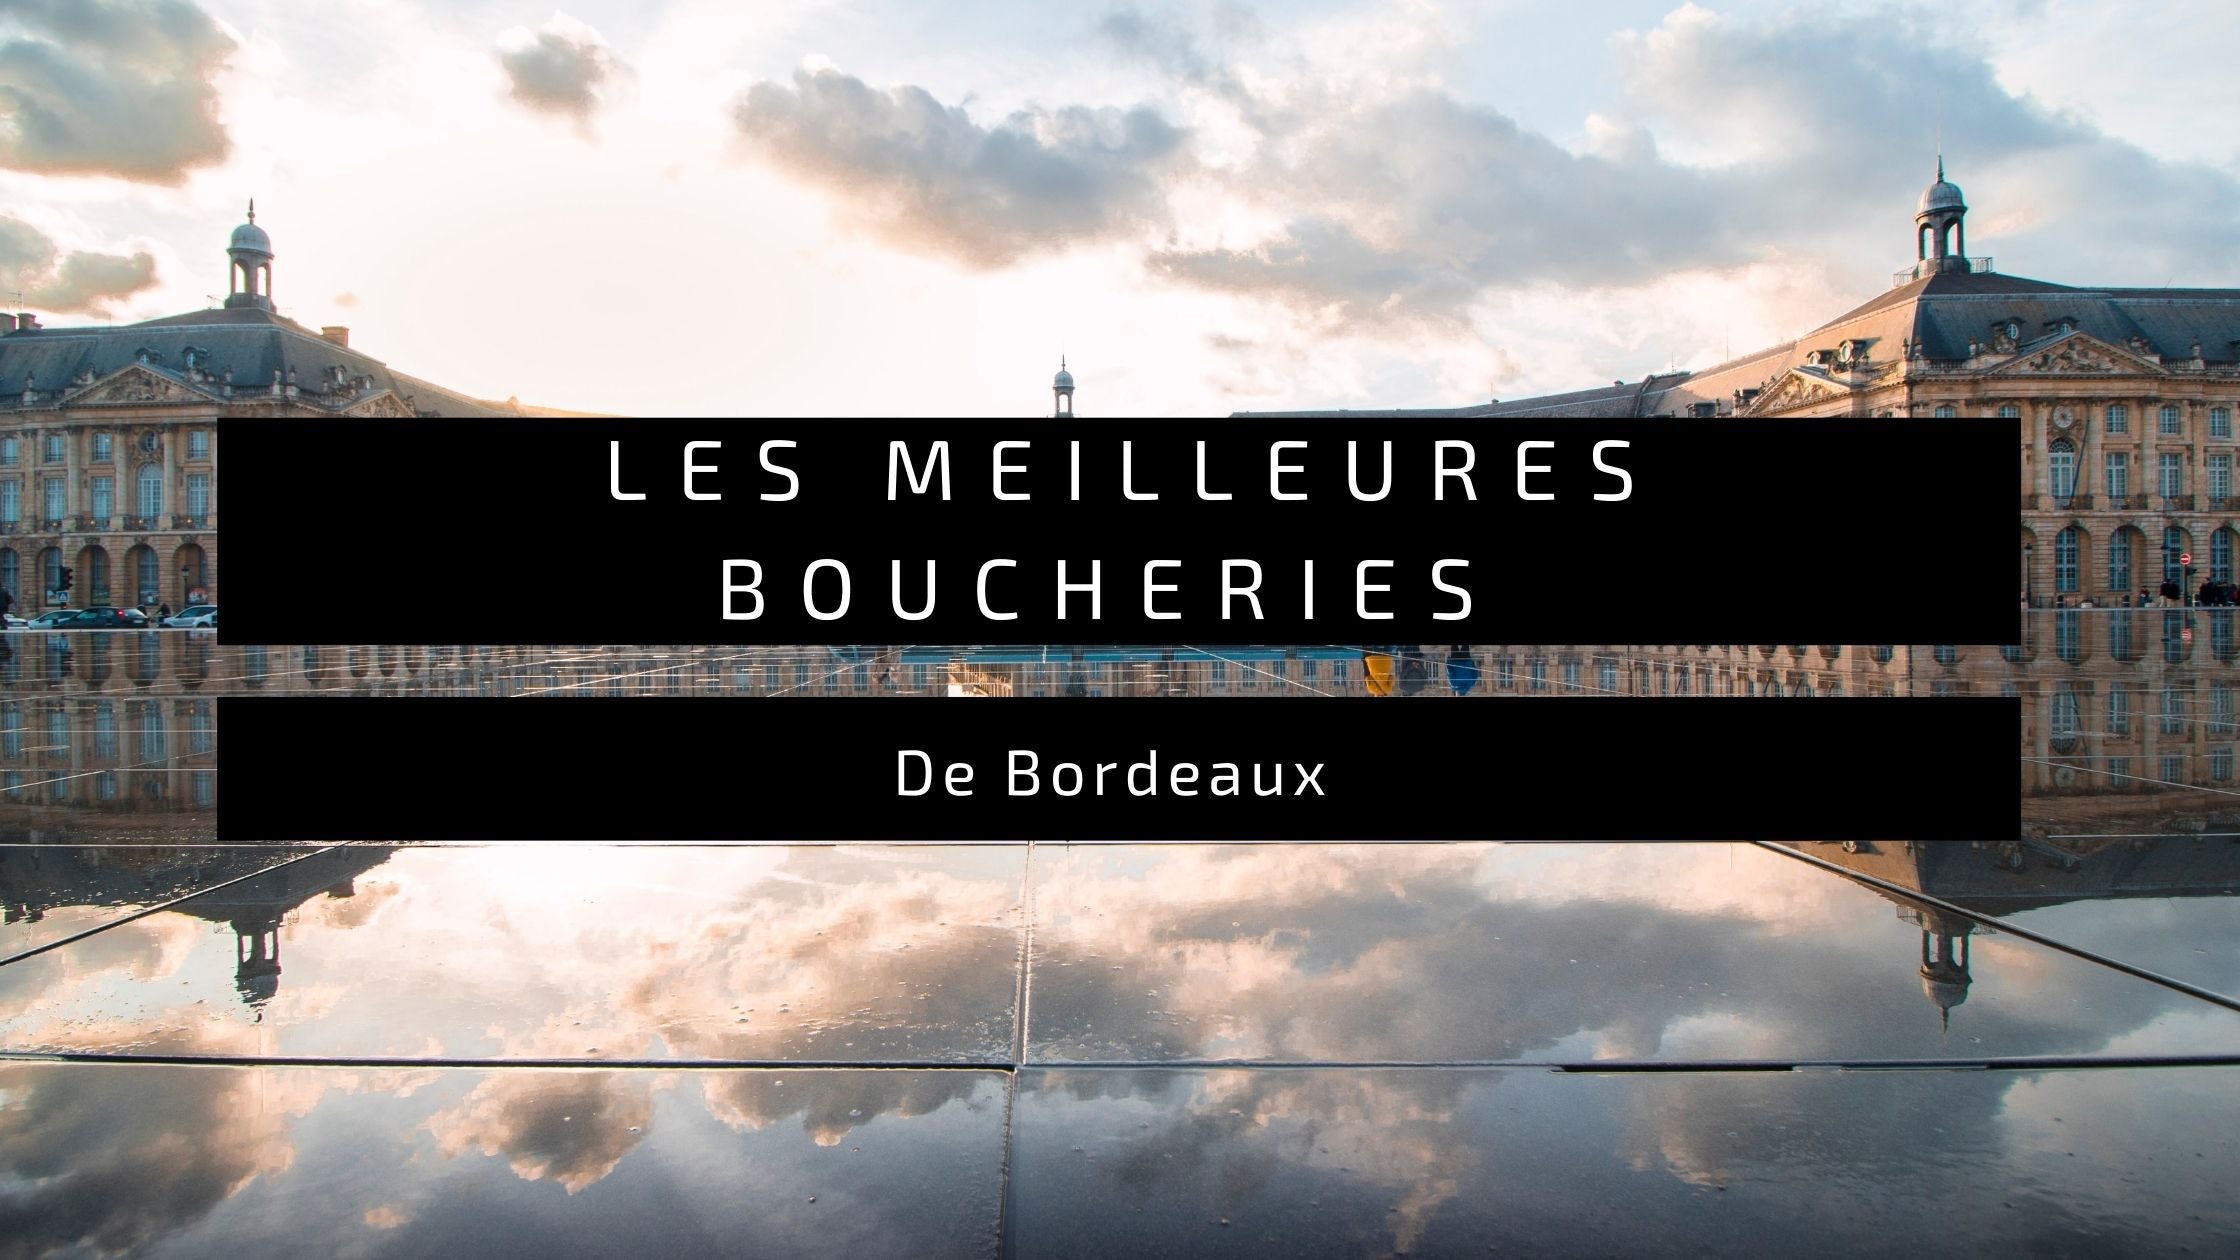 Les Meilleures Boucheries de Bordeaux